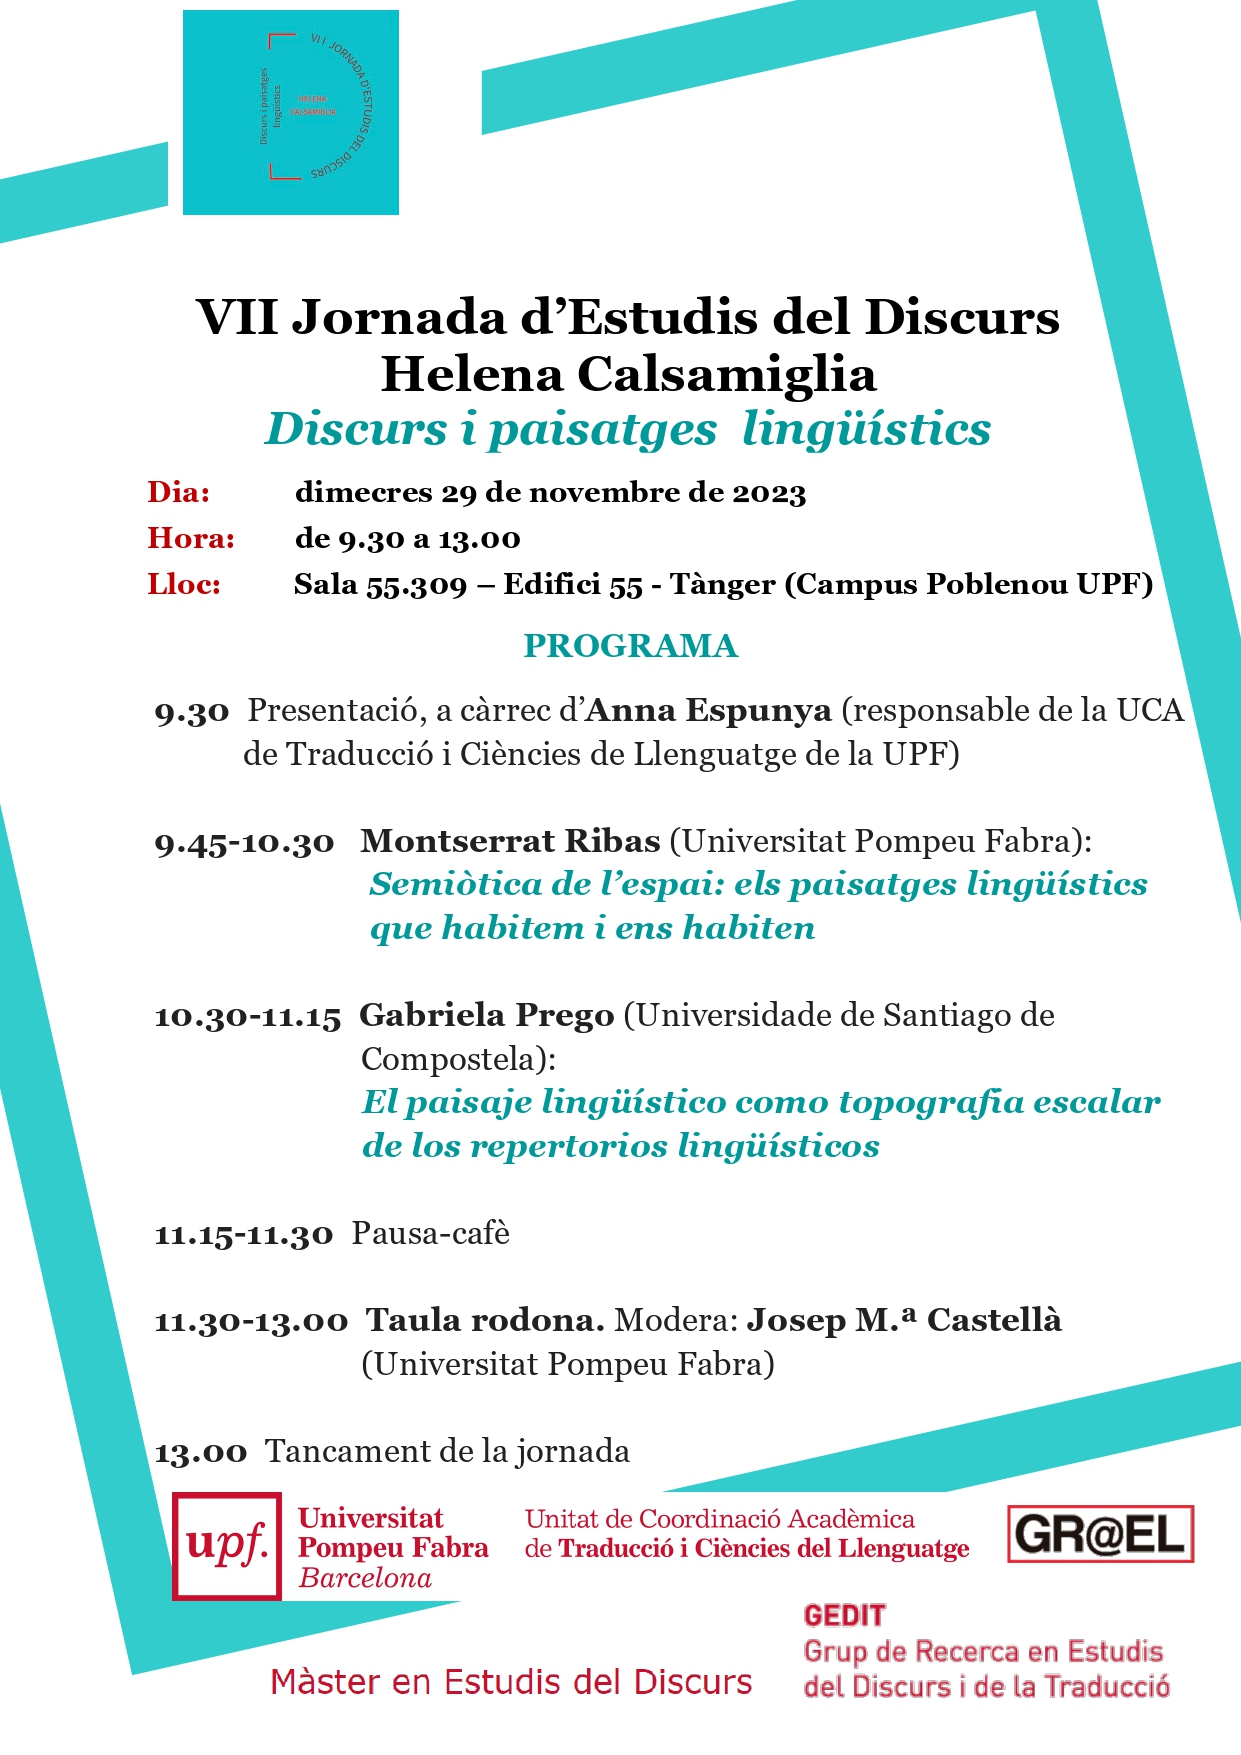 29/11/2023 VII Jornada d’Estudis del Discurs Helena Calsamiglia